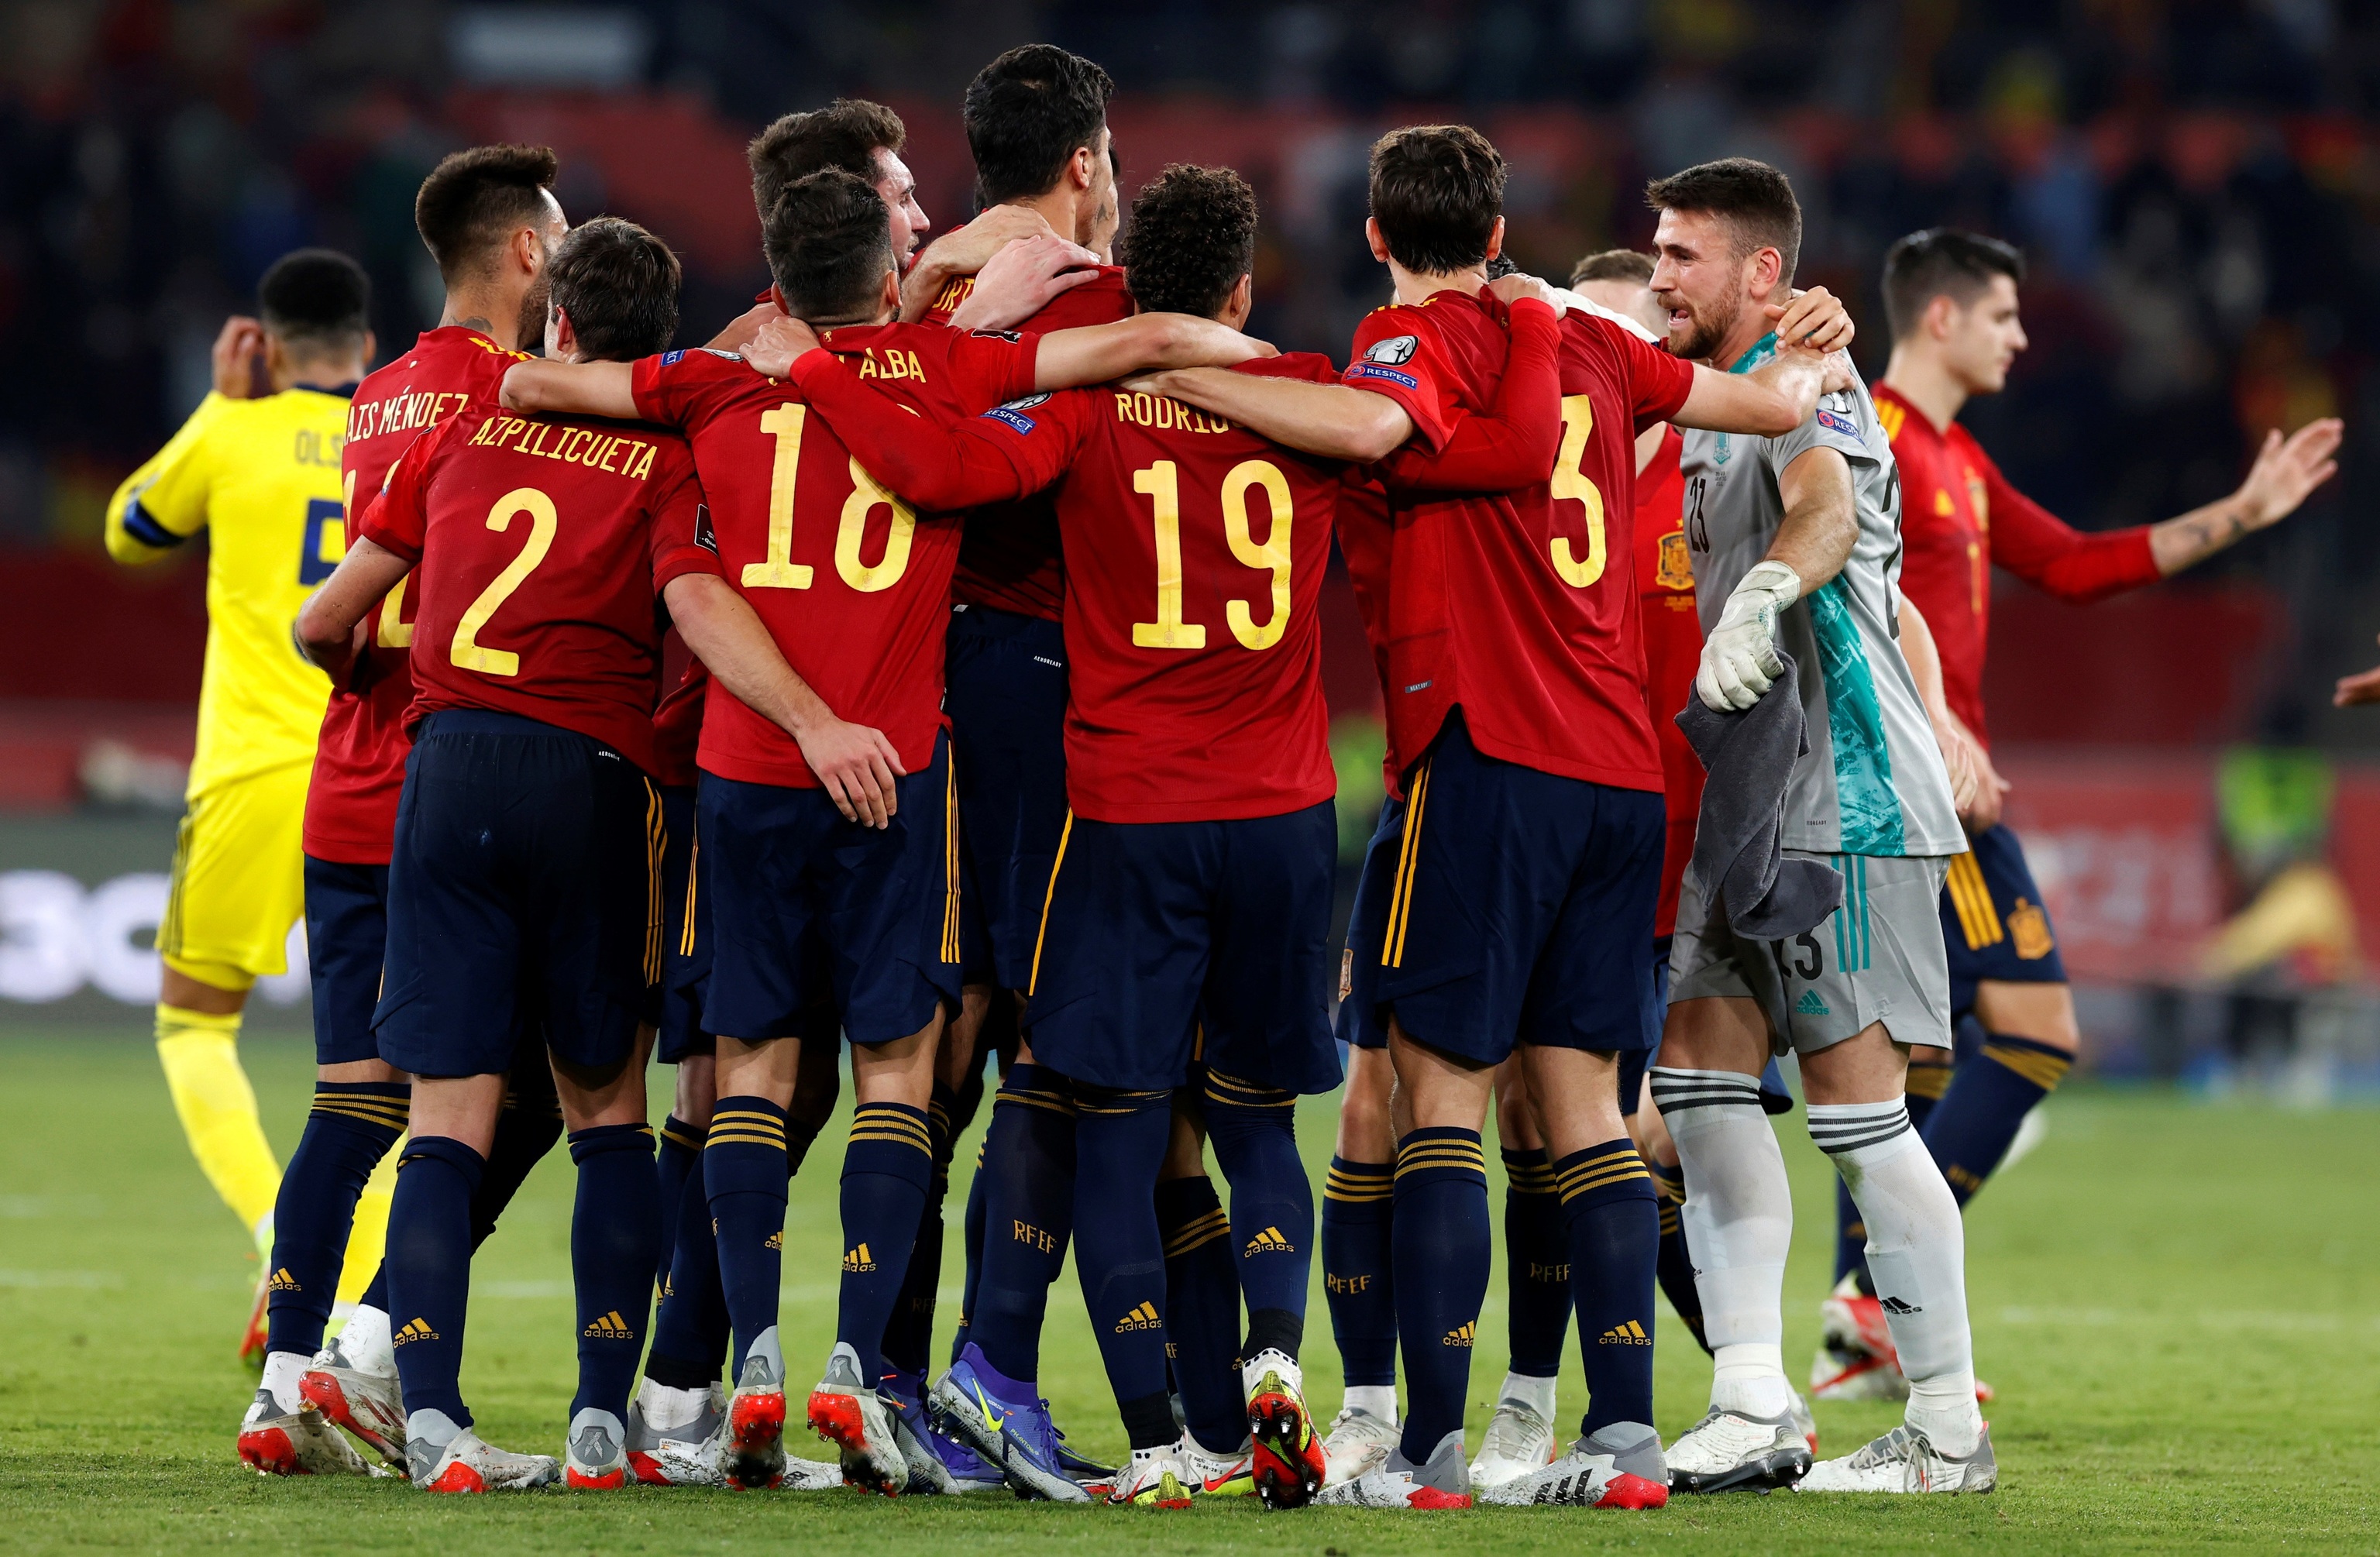 Es España favorita para el Mundial? | Mundial